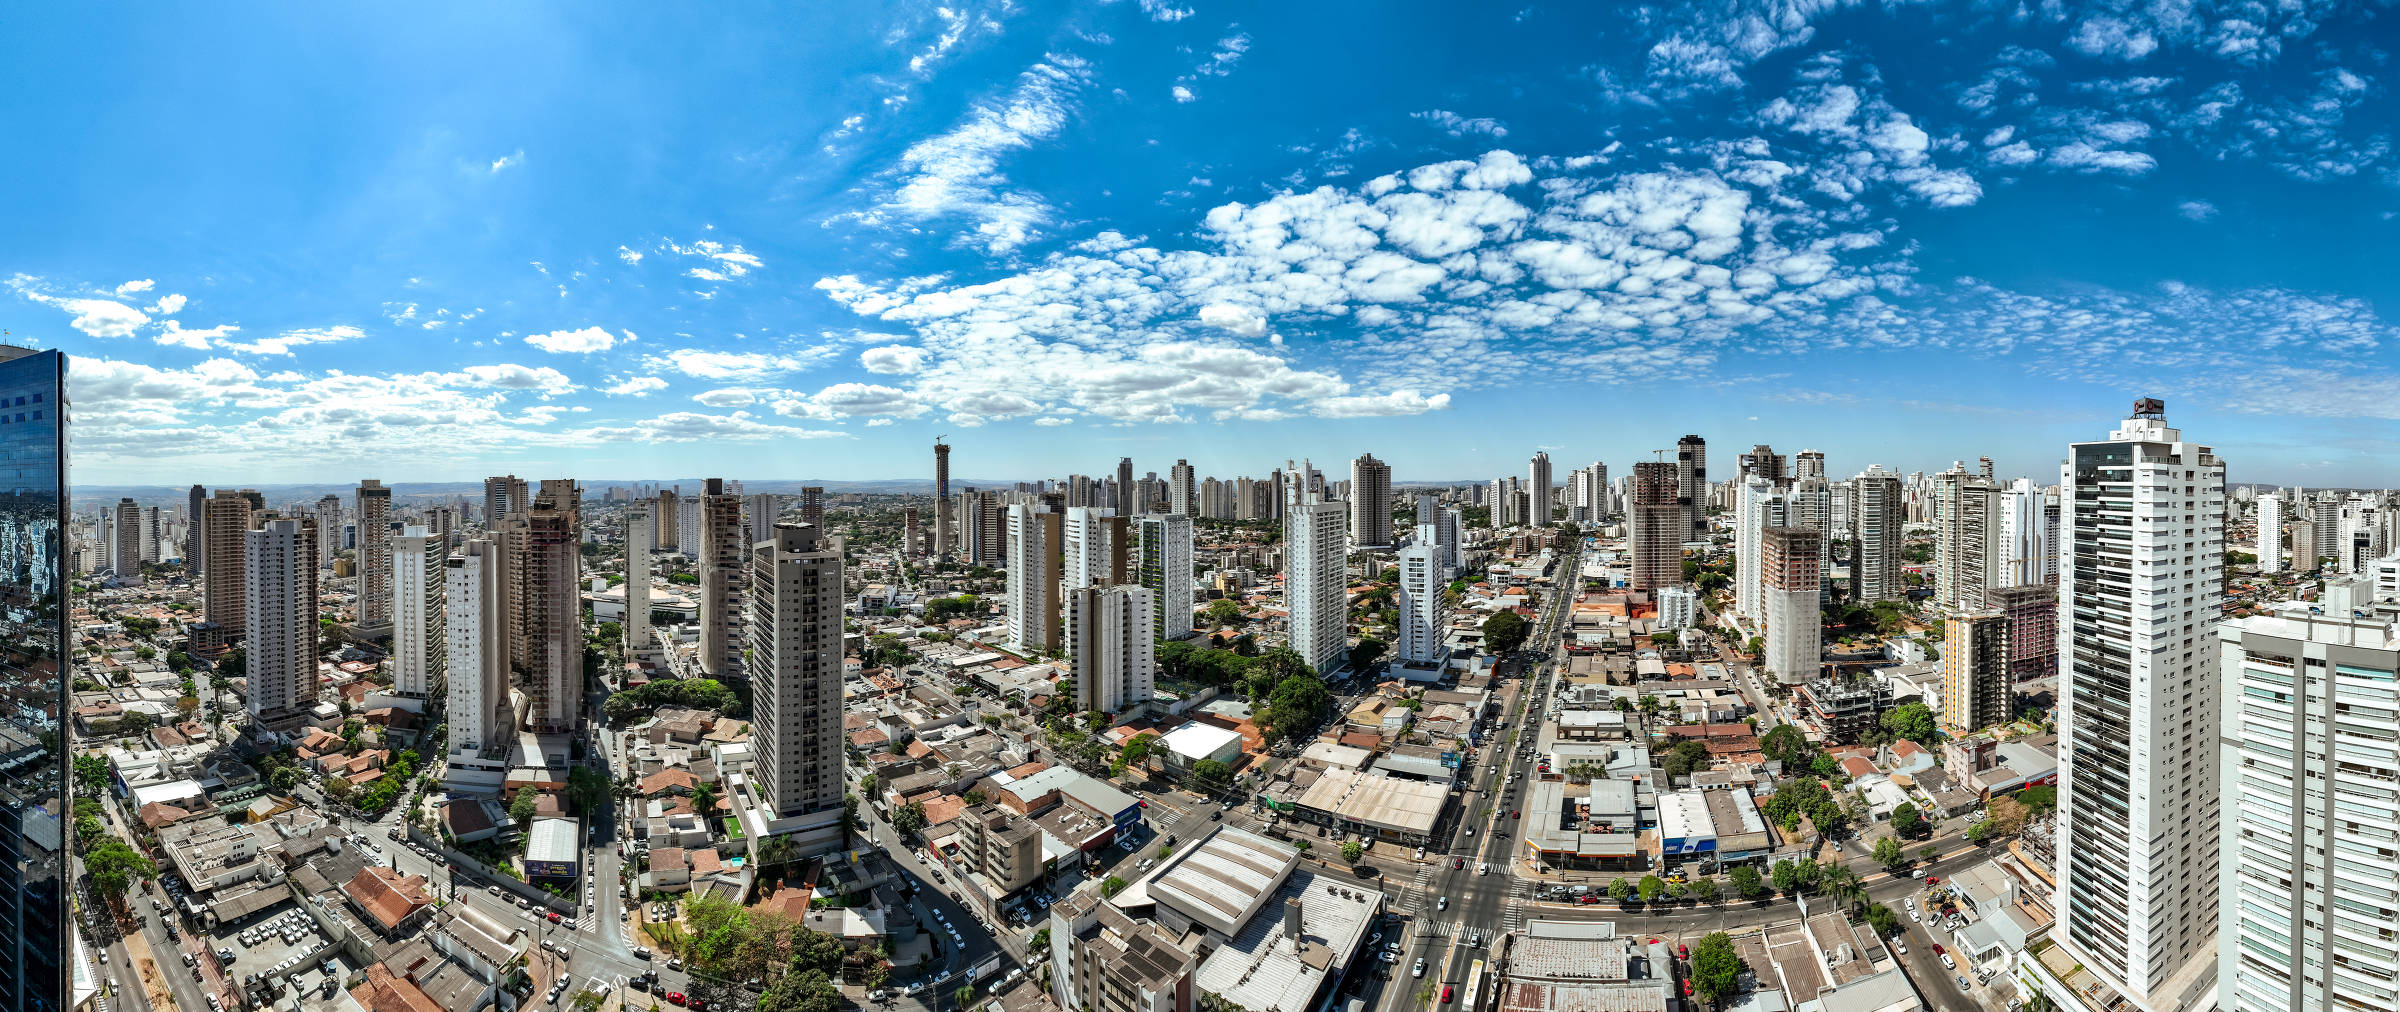 ENERGY BRASIL INAUGURA UNIDADES EM SÃO PAULO, RIO, PARÁ E GOIÁS